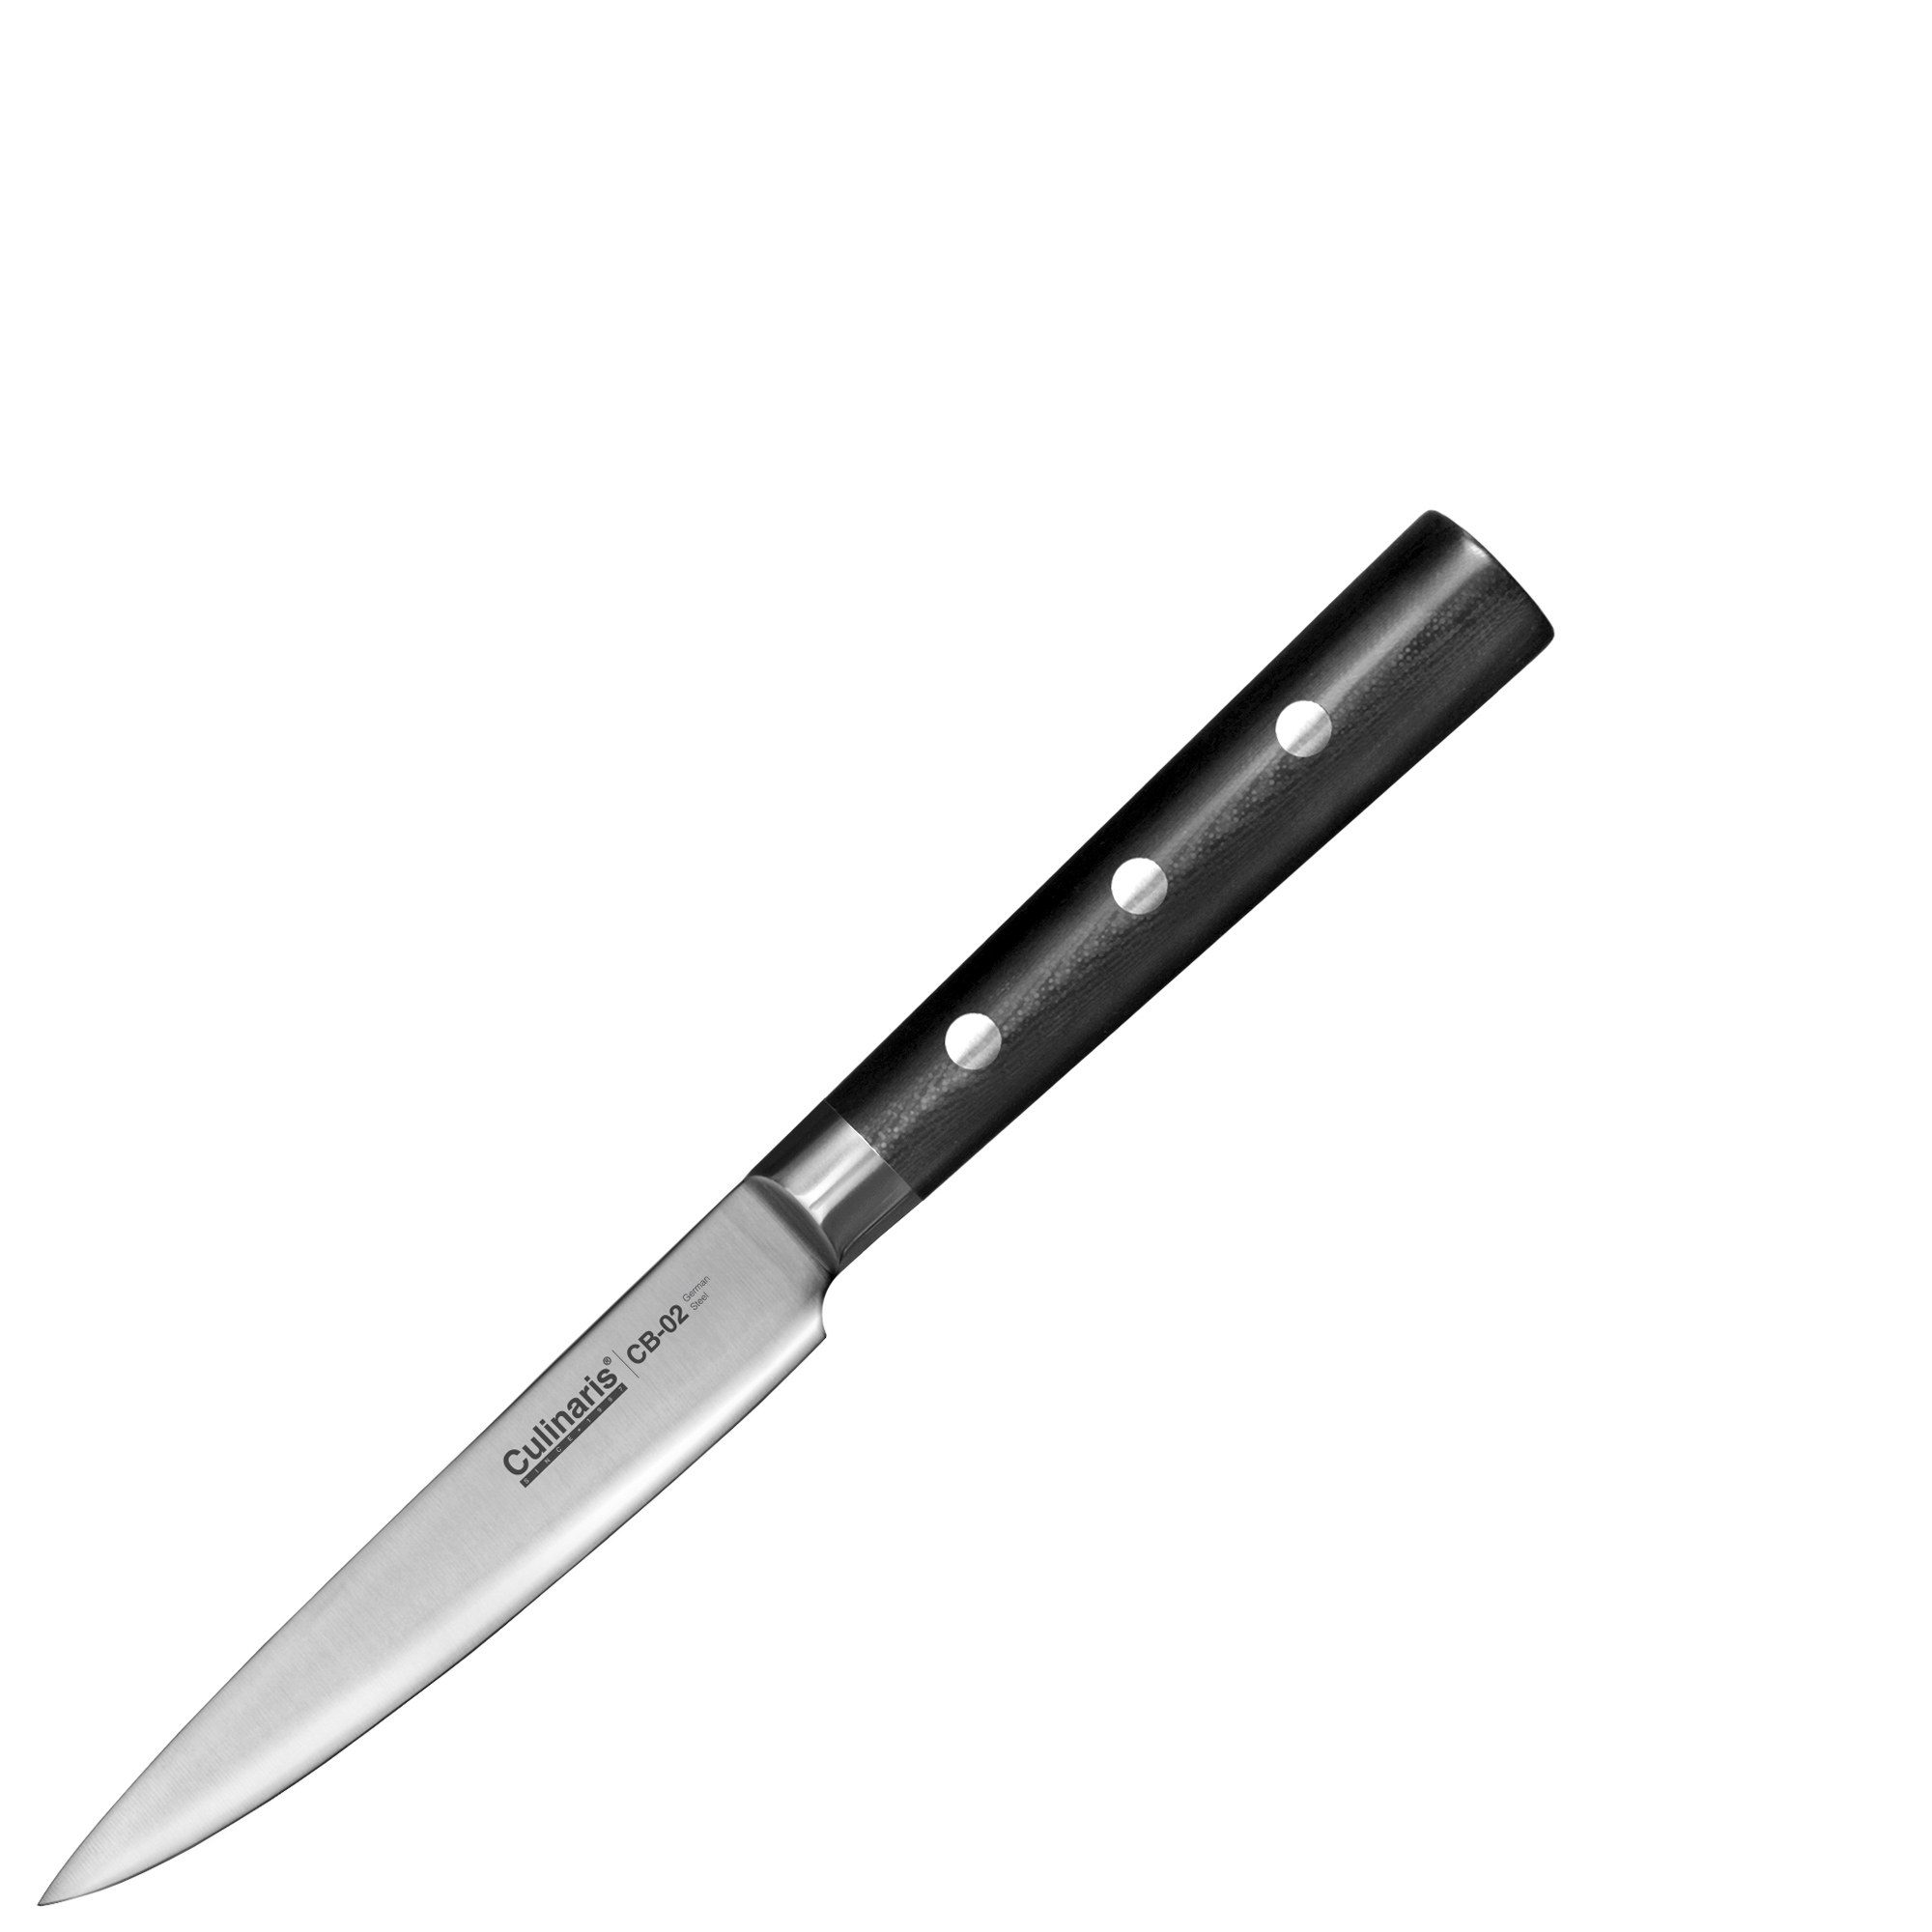 Culinaris - Utility Knife 12,5 cm | CB-02